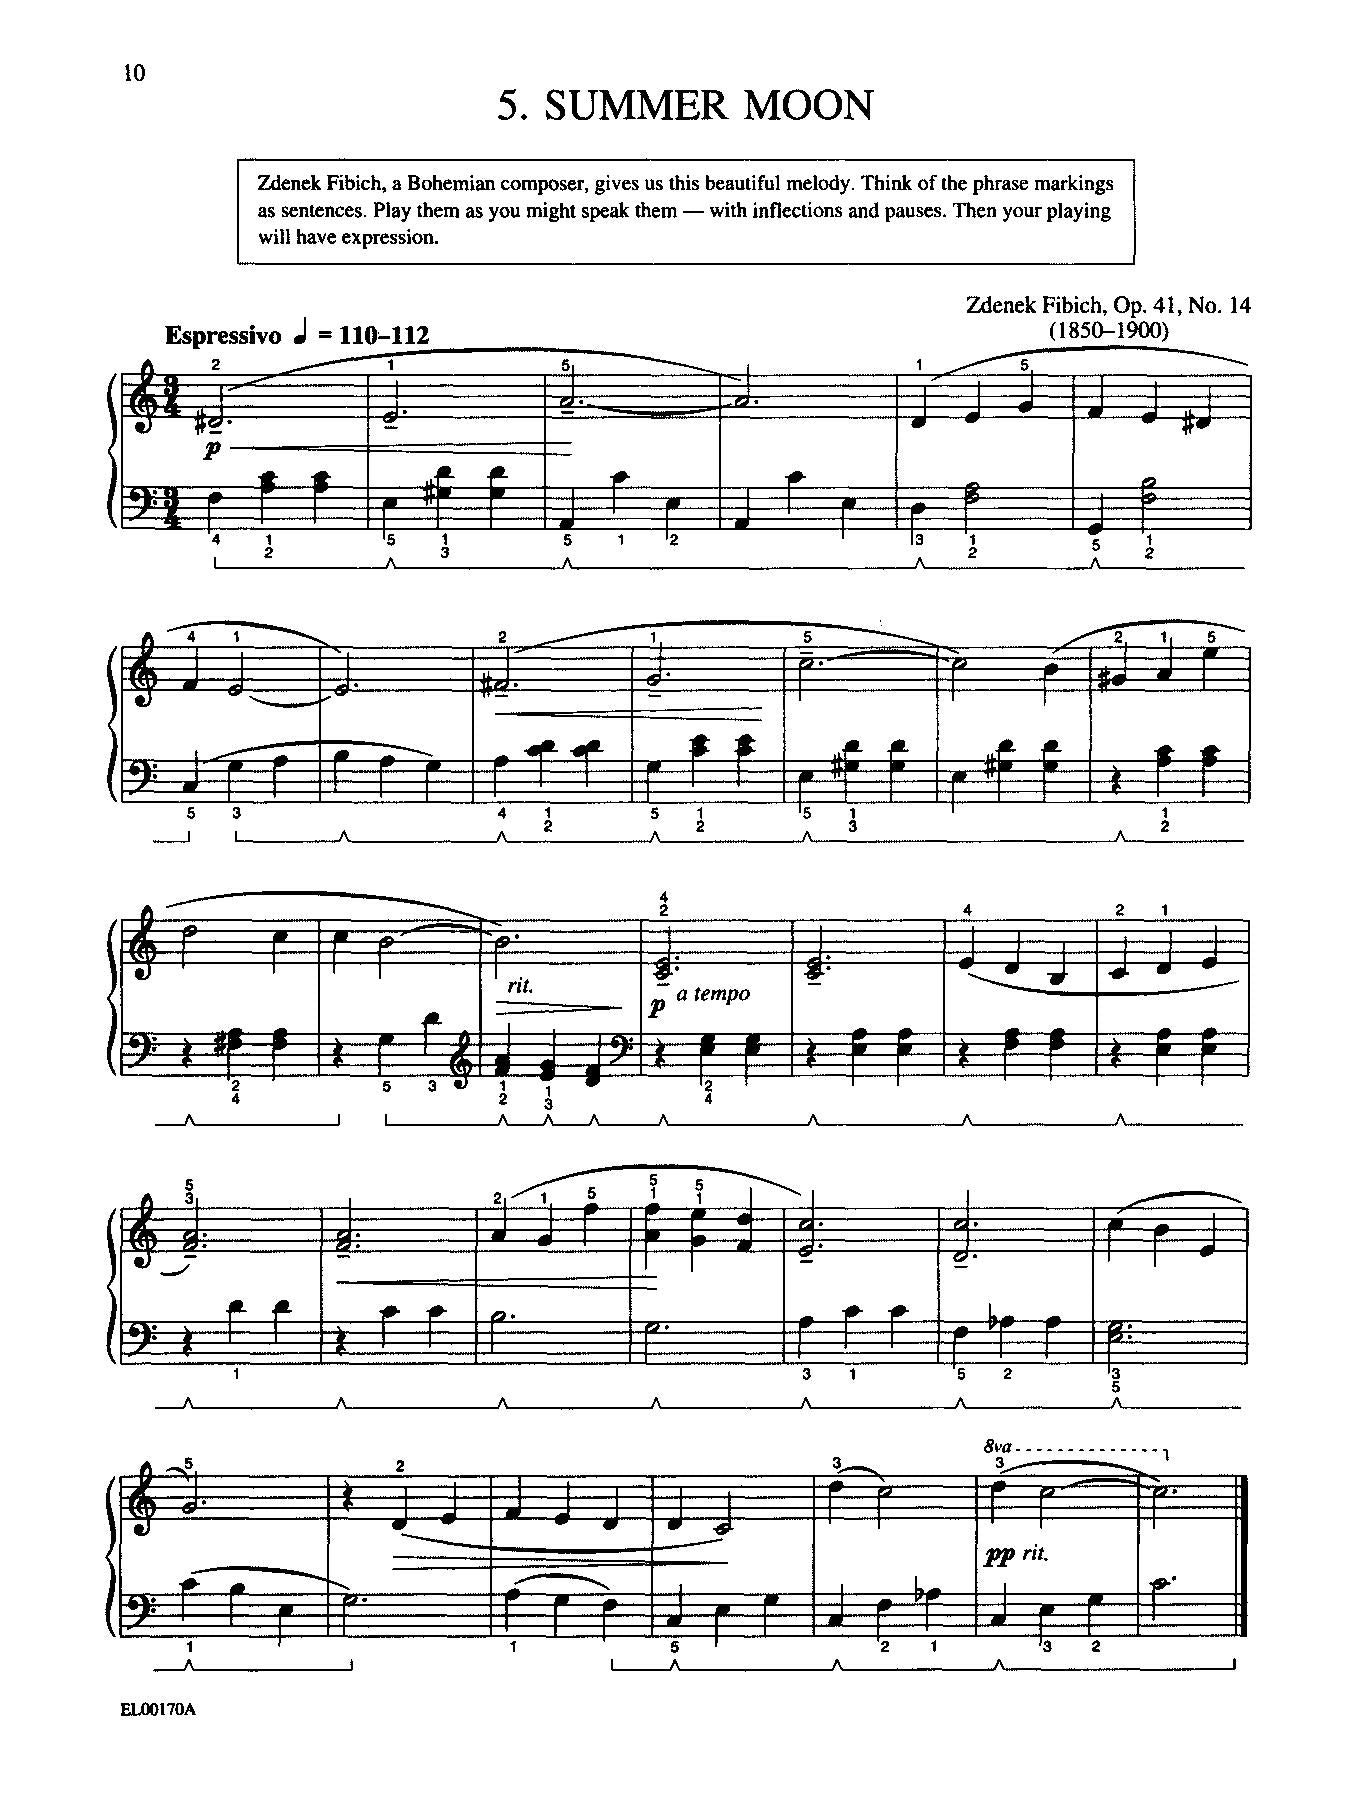 Schaum Piano Course, E - The Violet Book